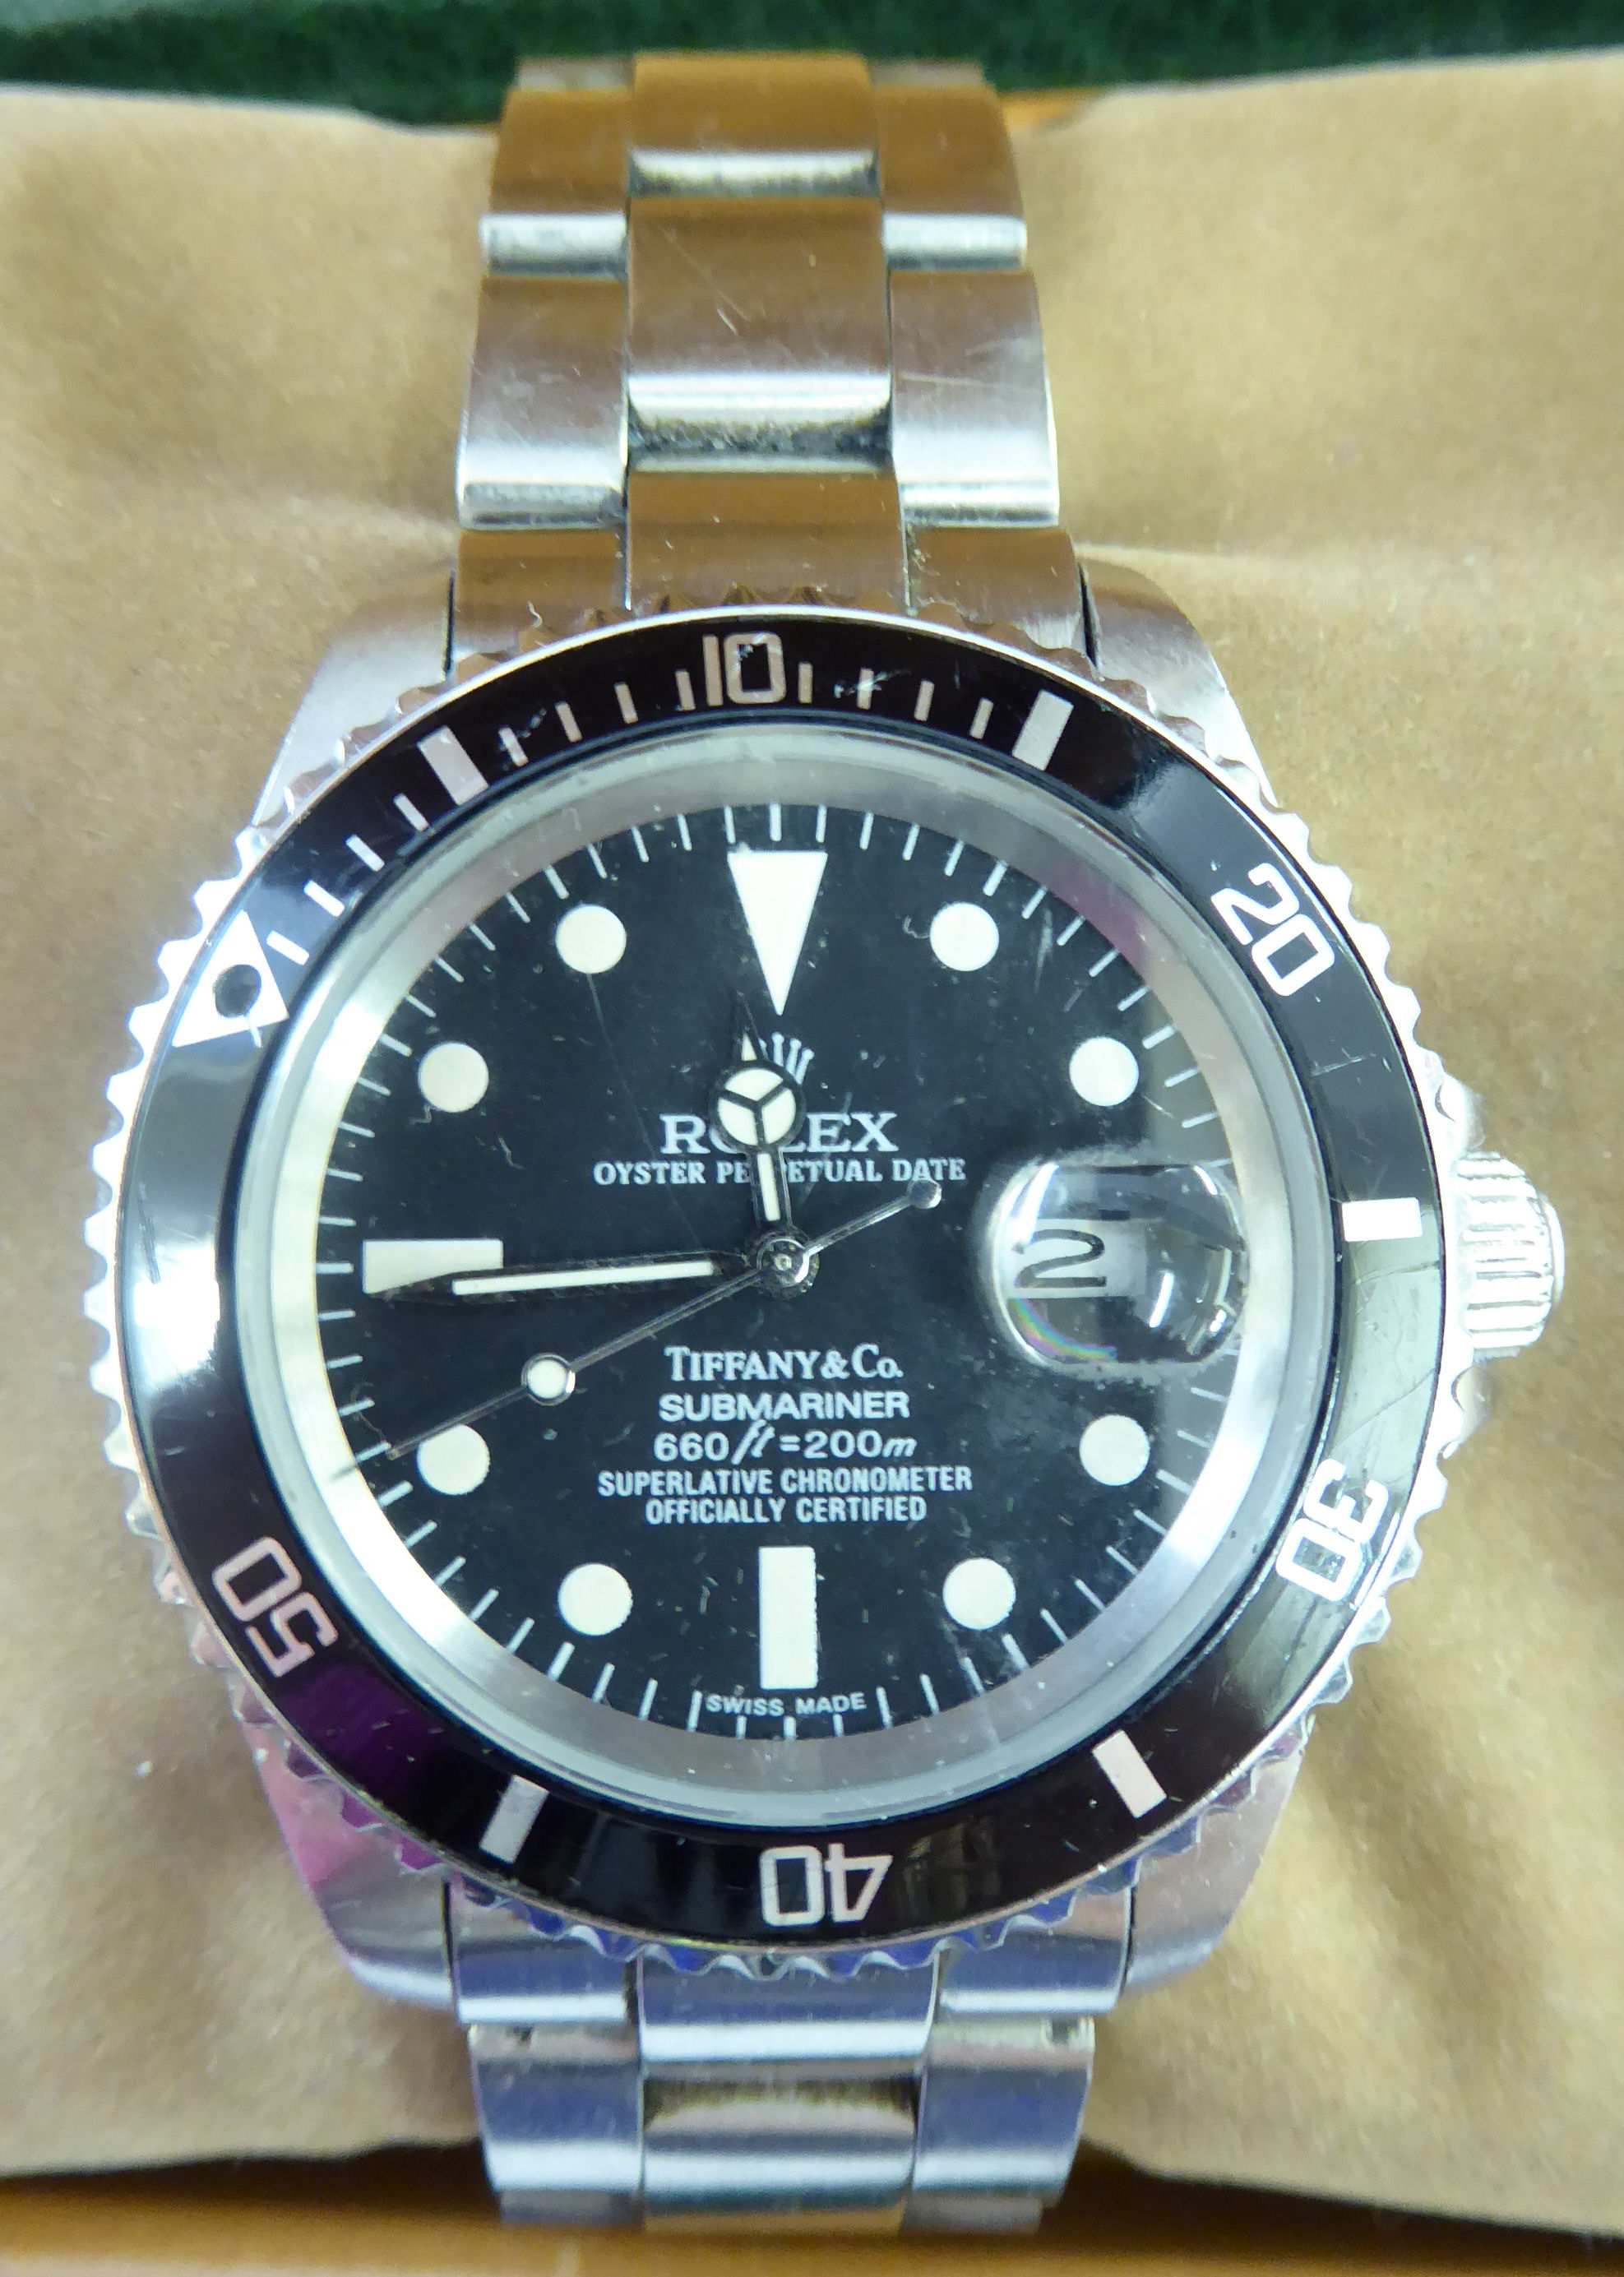 A replica Rolex Oyster Perpetual Date submariner wristwatch,